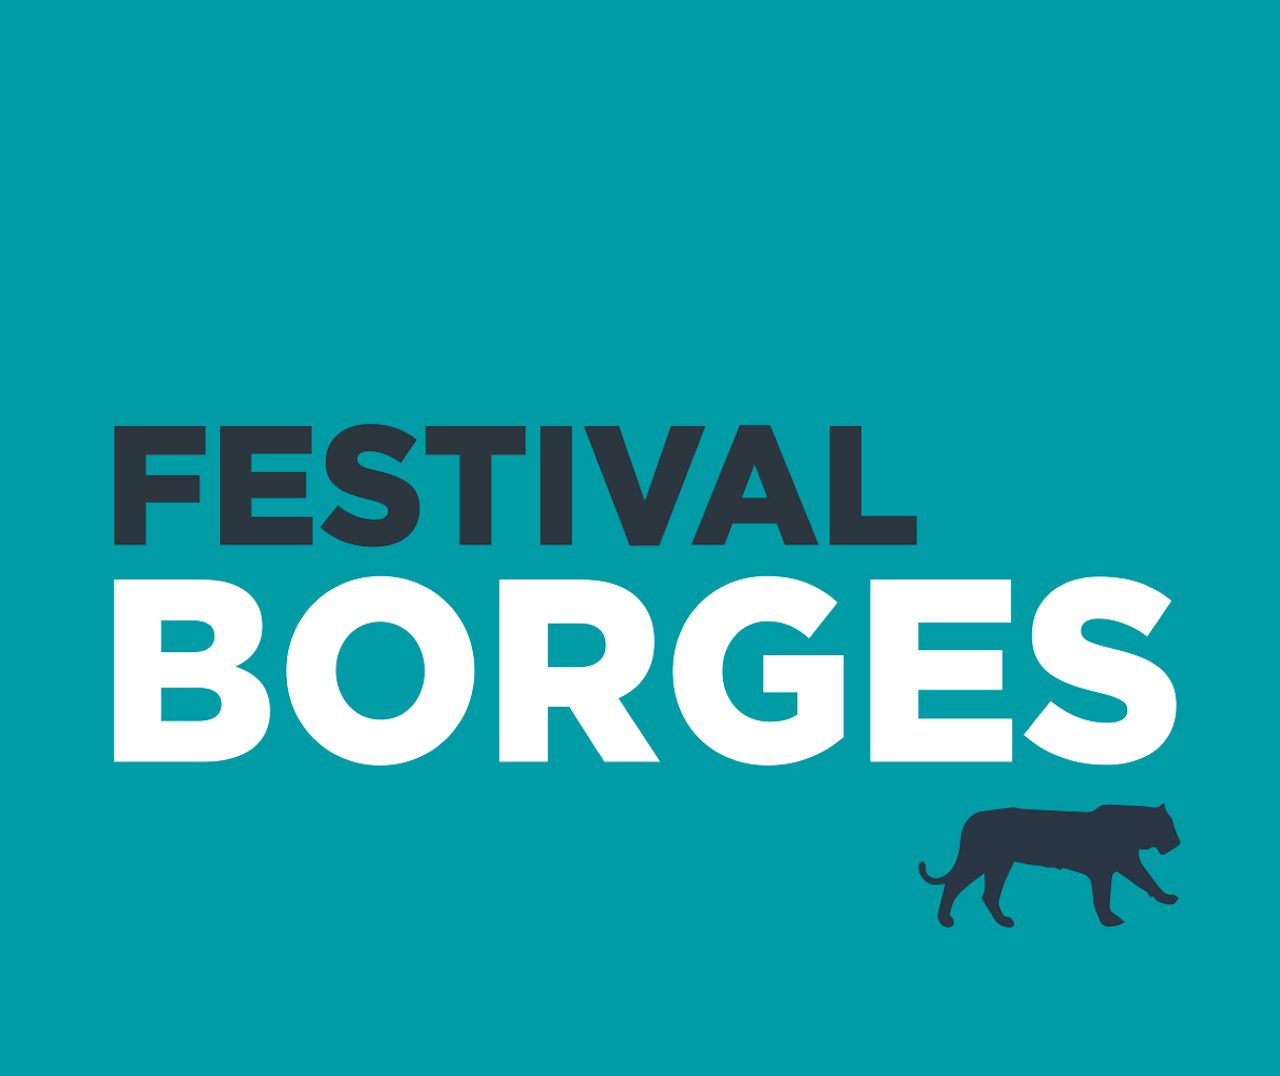 Comienza el Festival dedicado a celebrar el nacimiento de Jorge Luis Borges, el 24 de agosto de 1899